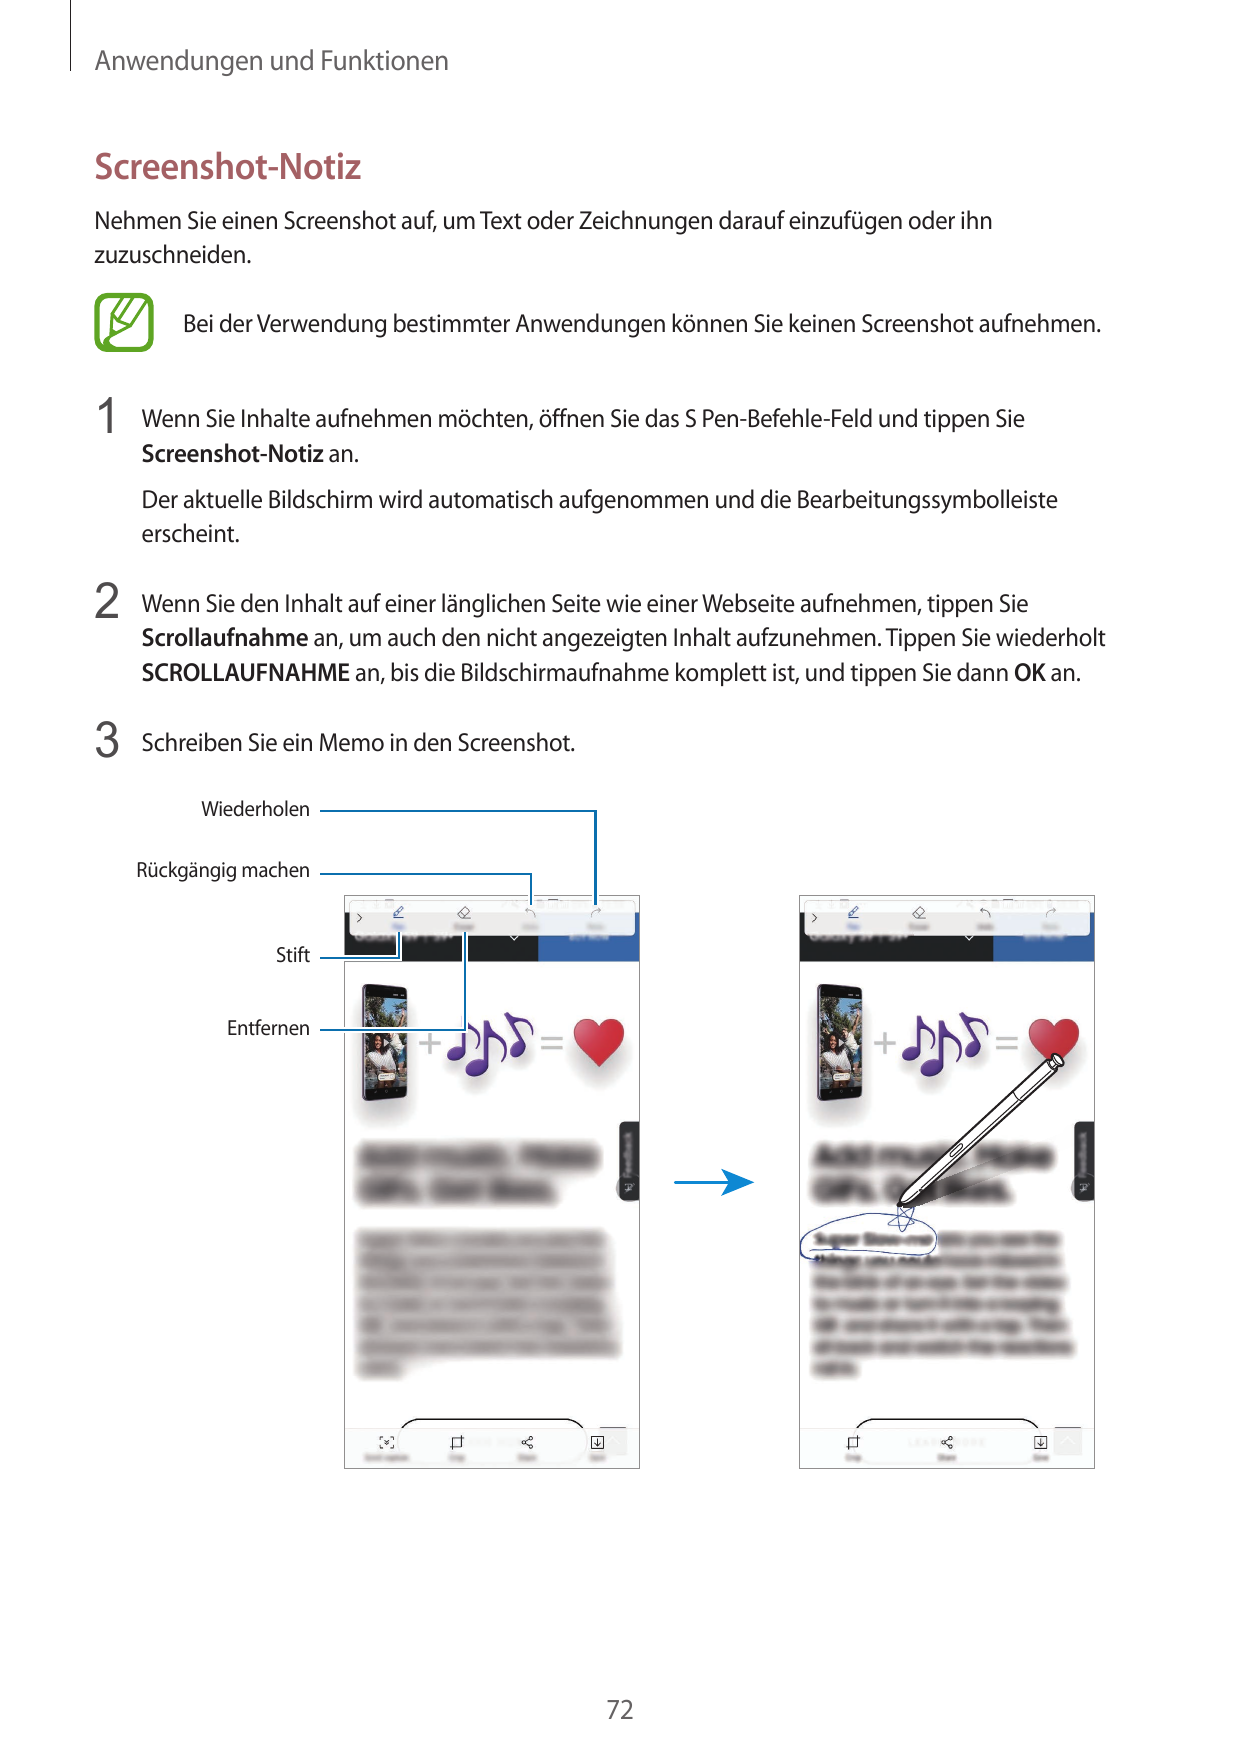 Anwendungen und FunktionenScreenshot-NotizNehmen Sie einen Screenshot auf, um Text oder Zeichnungen darauf einzufügen oder ihnzu